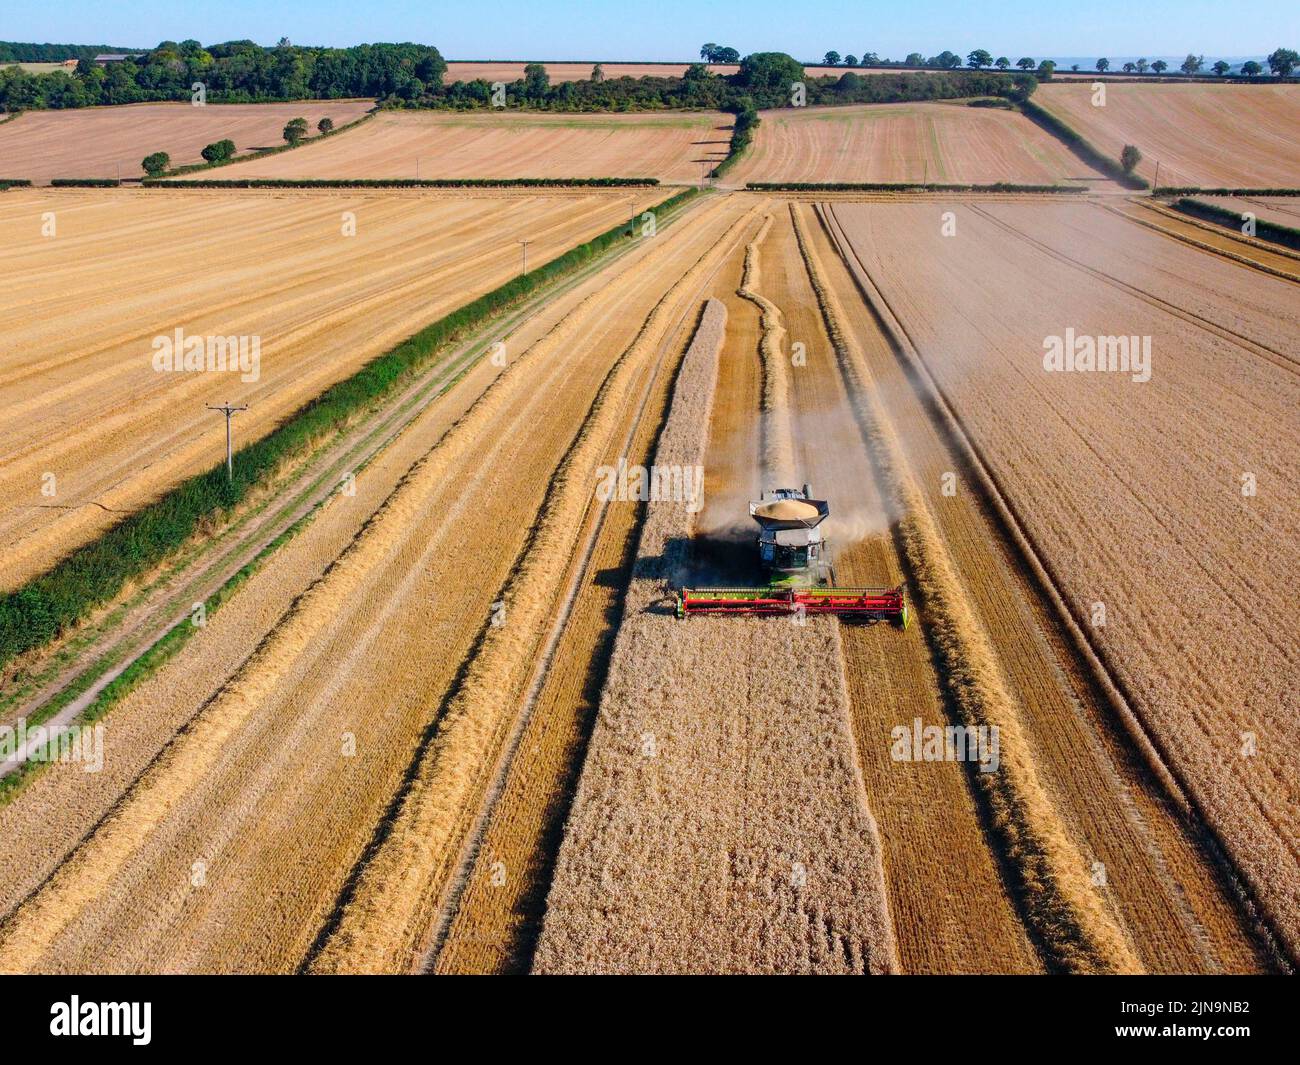 Vista aérea de una cosechadora en un paisaje de campos de trigo en las tierras de cultivo de North Yorkshire en el Reino Unido. Foto de stock